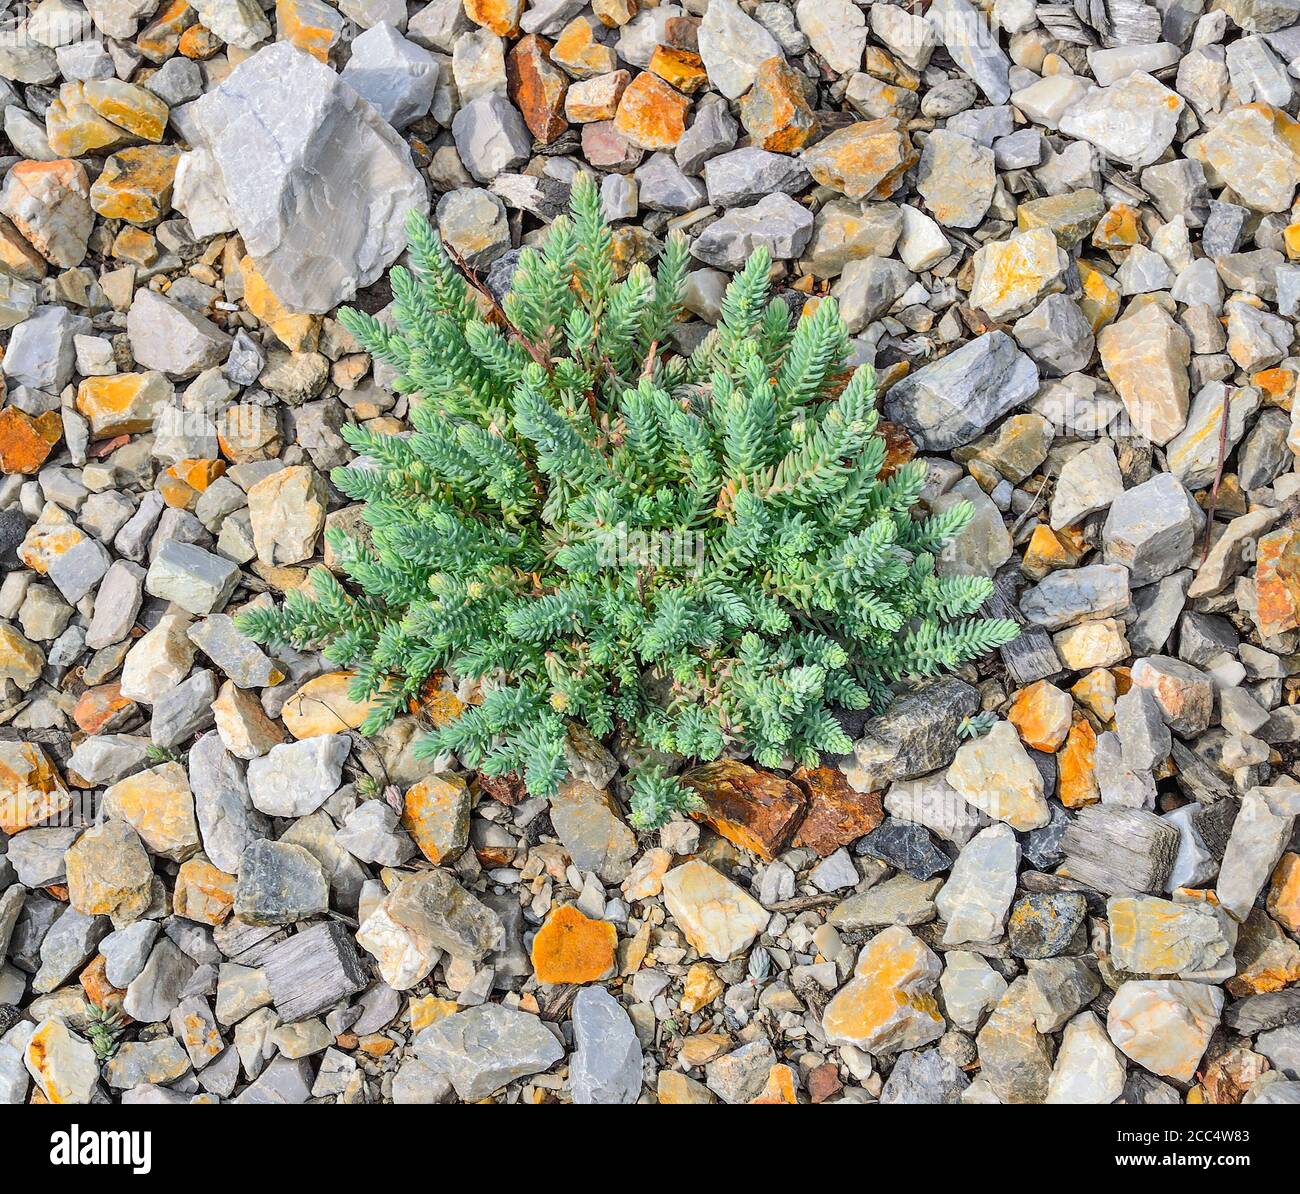 Sedum - succulent stonecrop plant (Sedum creeping or Sedum humifusum). Decorative garden groundcover plant for rockary, stone or alpine garden. Garden Stock Photo